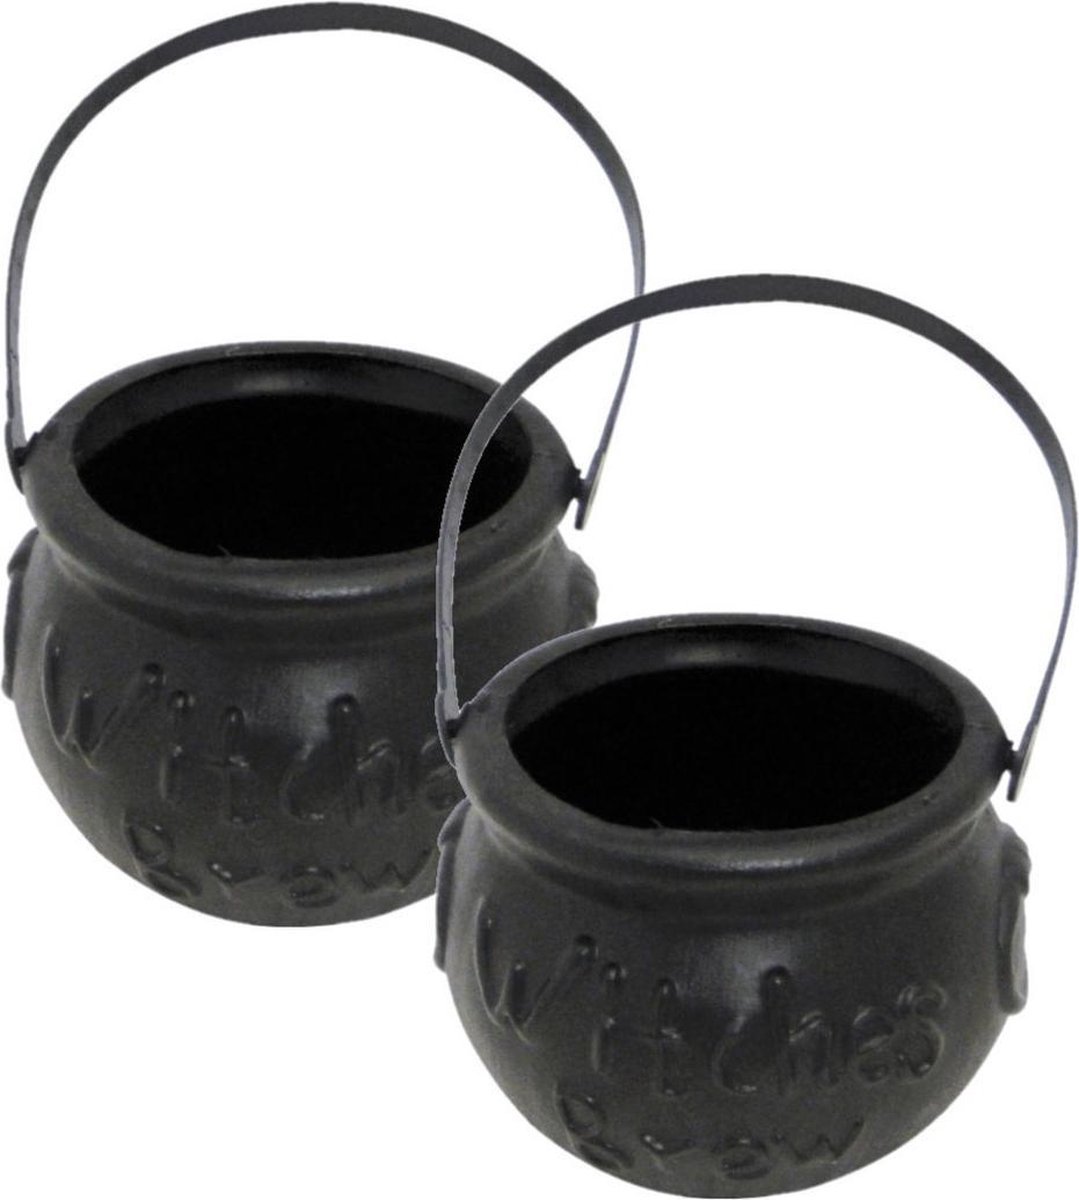 Set van 2x stuks mini heksenketel/kookpot zwart 15 cm - Halloween uitdeel cadeautjes